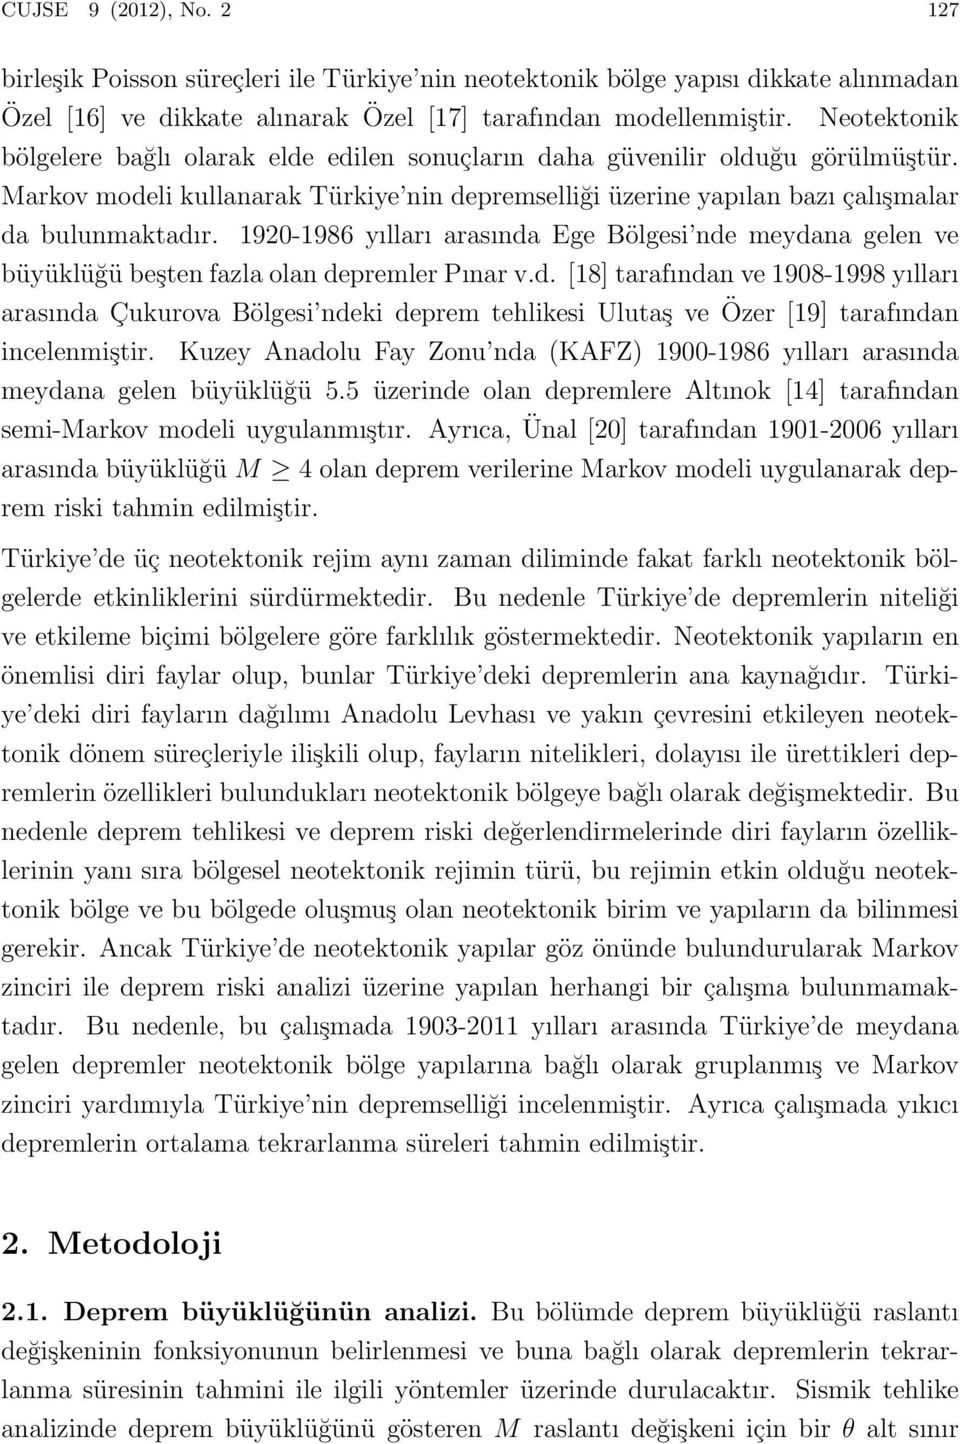 1920-1986 yılları arasında Ege Bölgesi nde meydana gelen ve büyüklüğü beşten fazla olan depremler Pınar v.d. [18] tarafından ve 1908-1998 yılları arasında Çukurova Bölgesi ndeki deprem tehlikesi Ulutaş ve Özer [19] tarafından incelenmiştir.